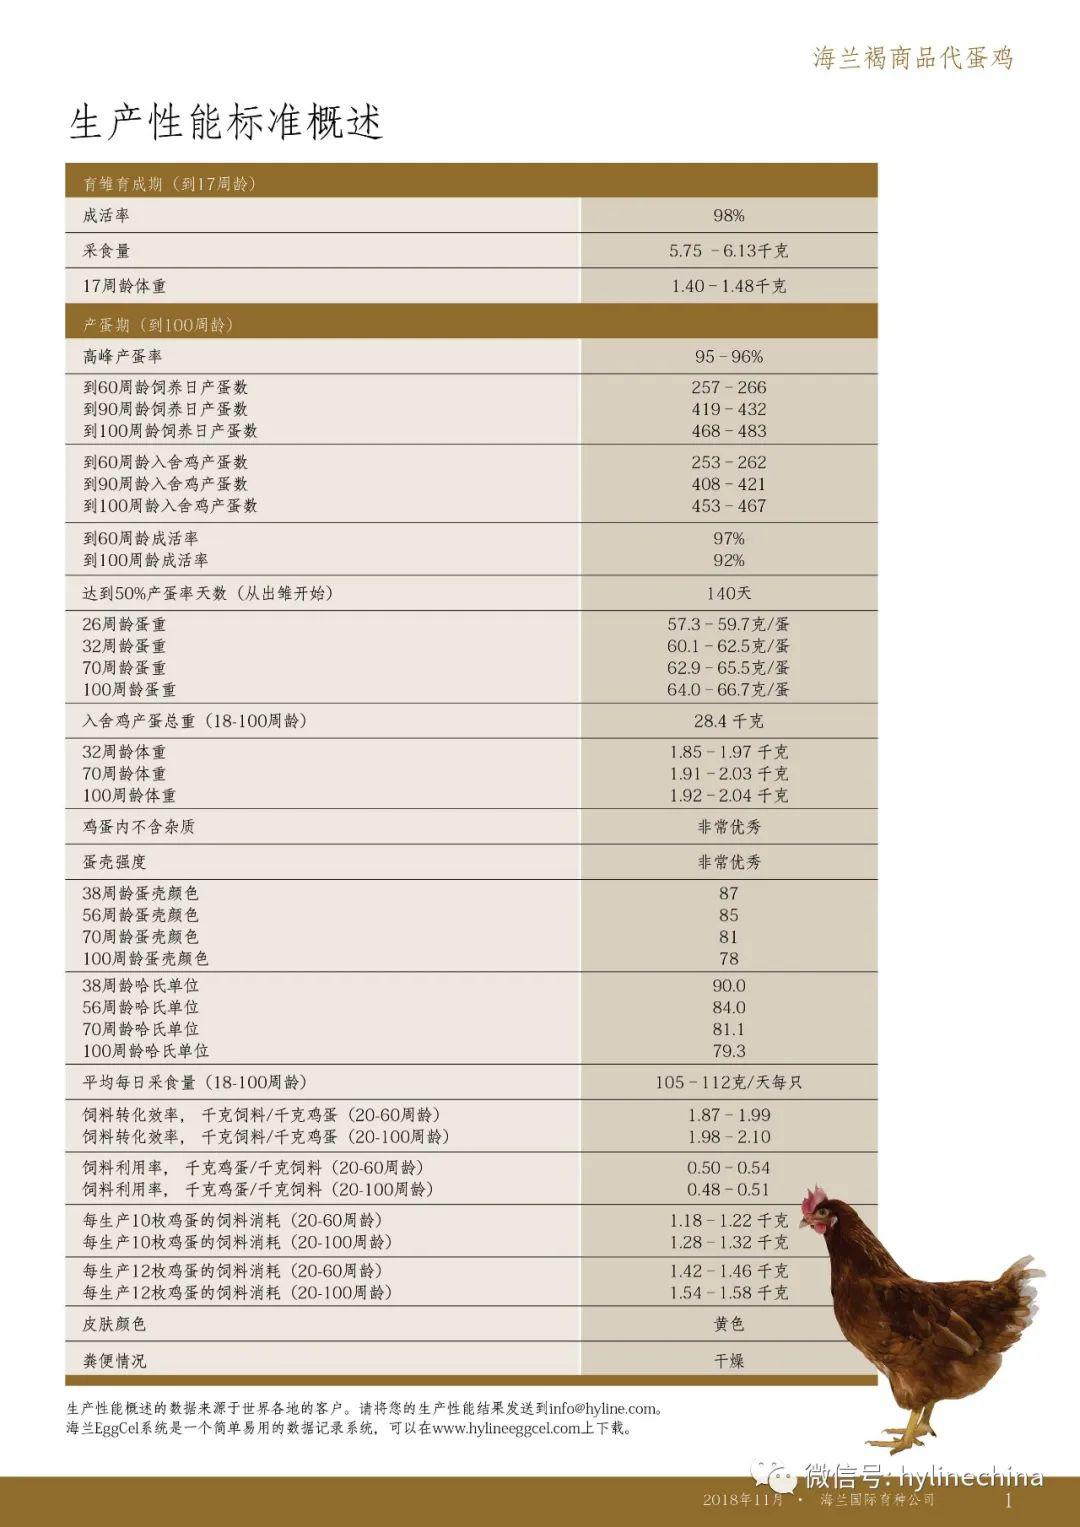 海兰褐蛋鸡全程光照表图片